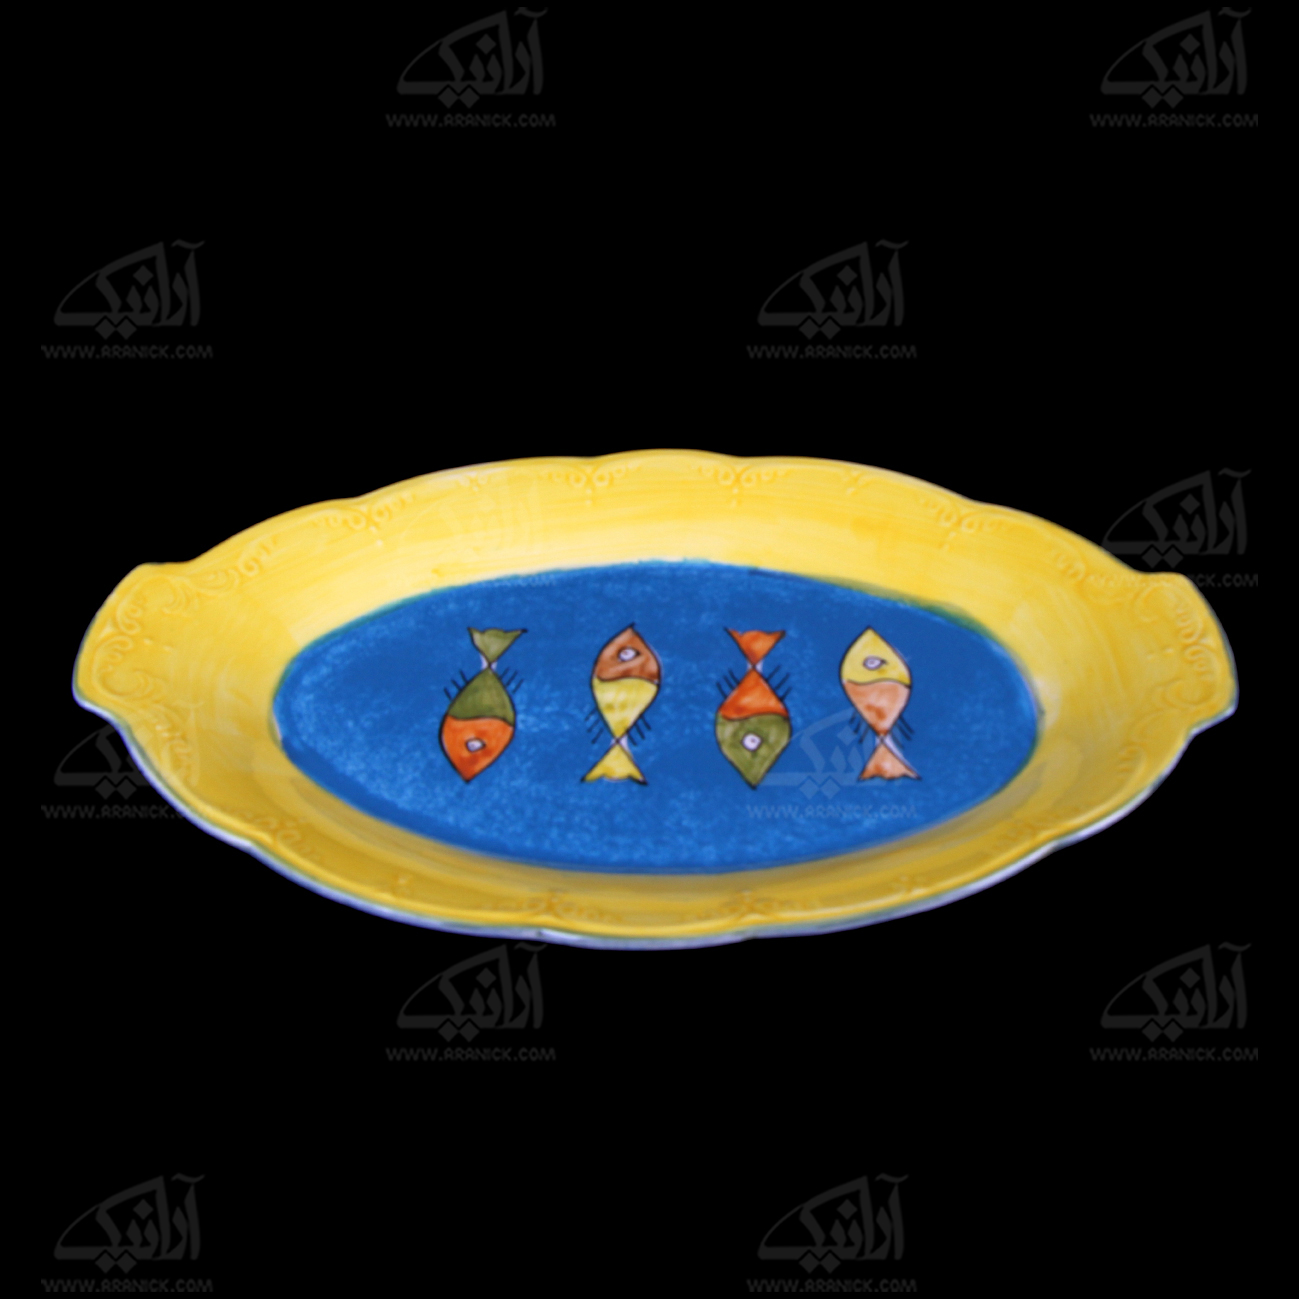 ‎دیس‎ ‎سفالی‎ ‎‎‎‎نقاشی زیر لعابی‎  آرانیک رنگ ‎زرد‎ ‎‎طرح‎ ‎ماهی‎ ‎ ‎‎‎‎مدل 1016700010